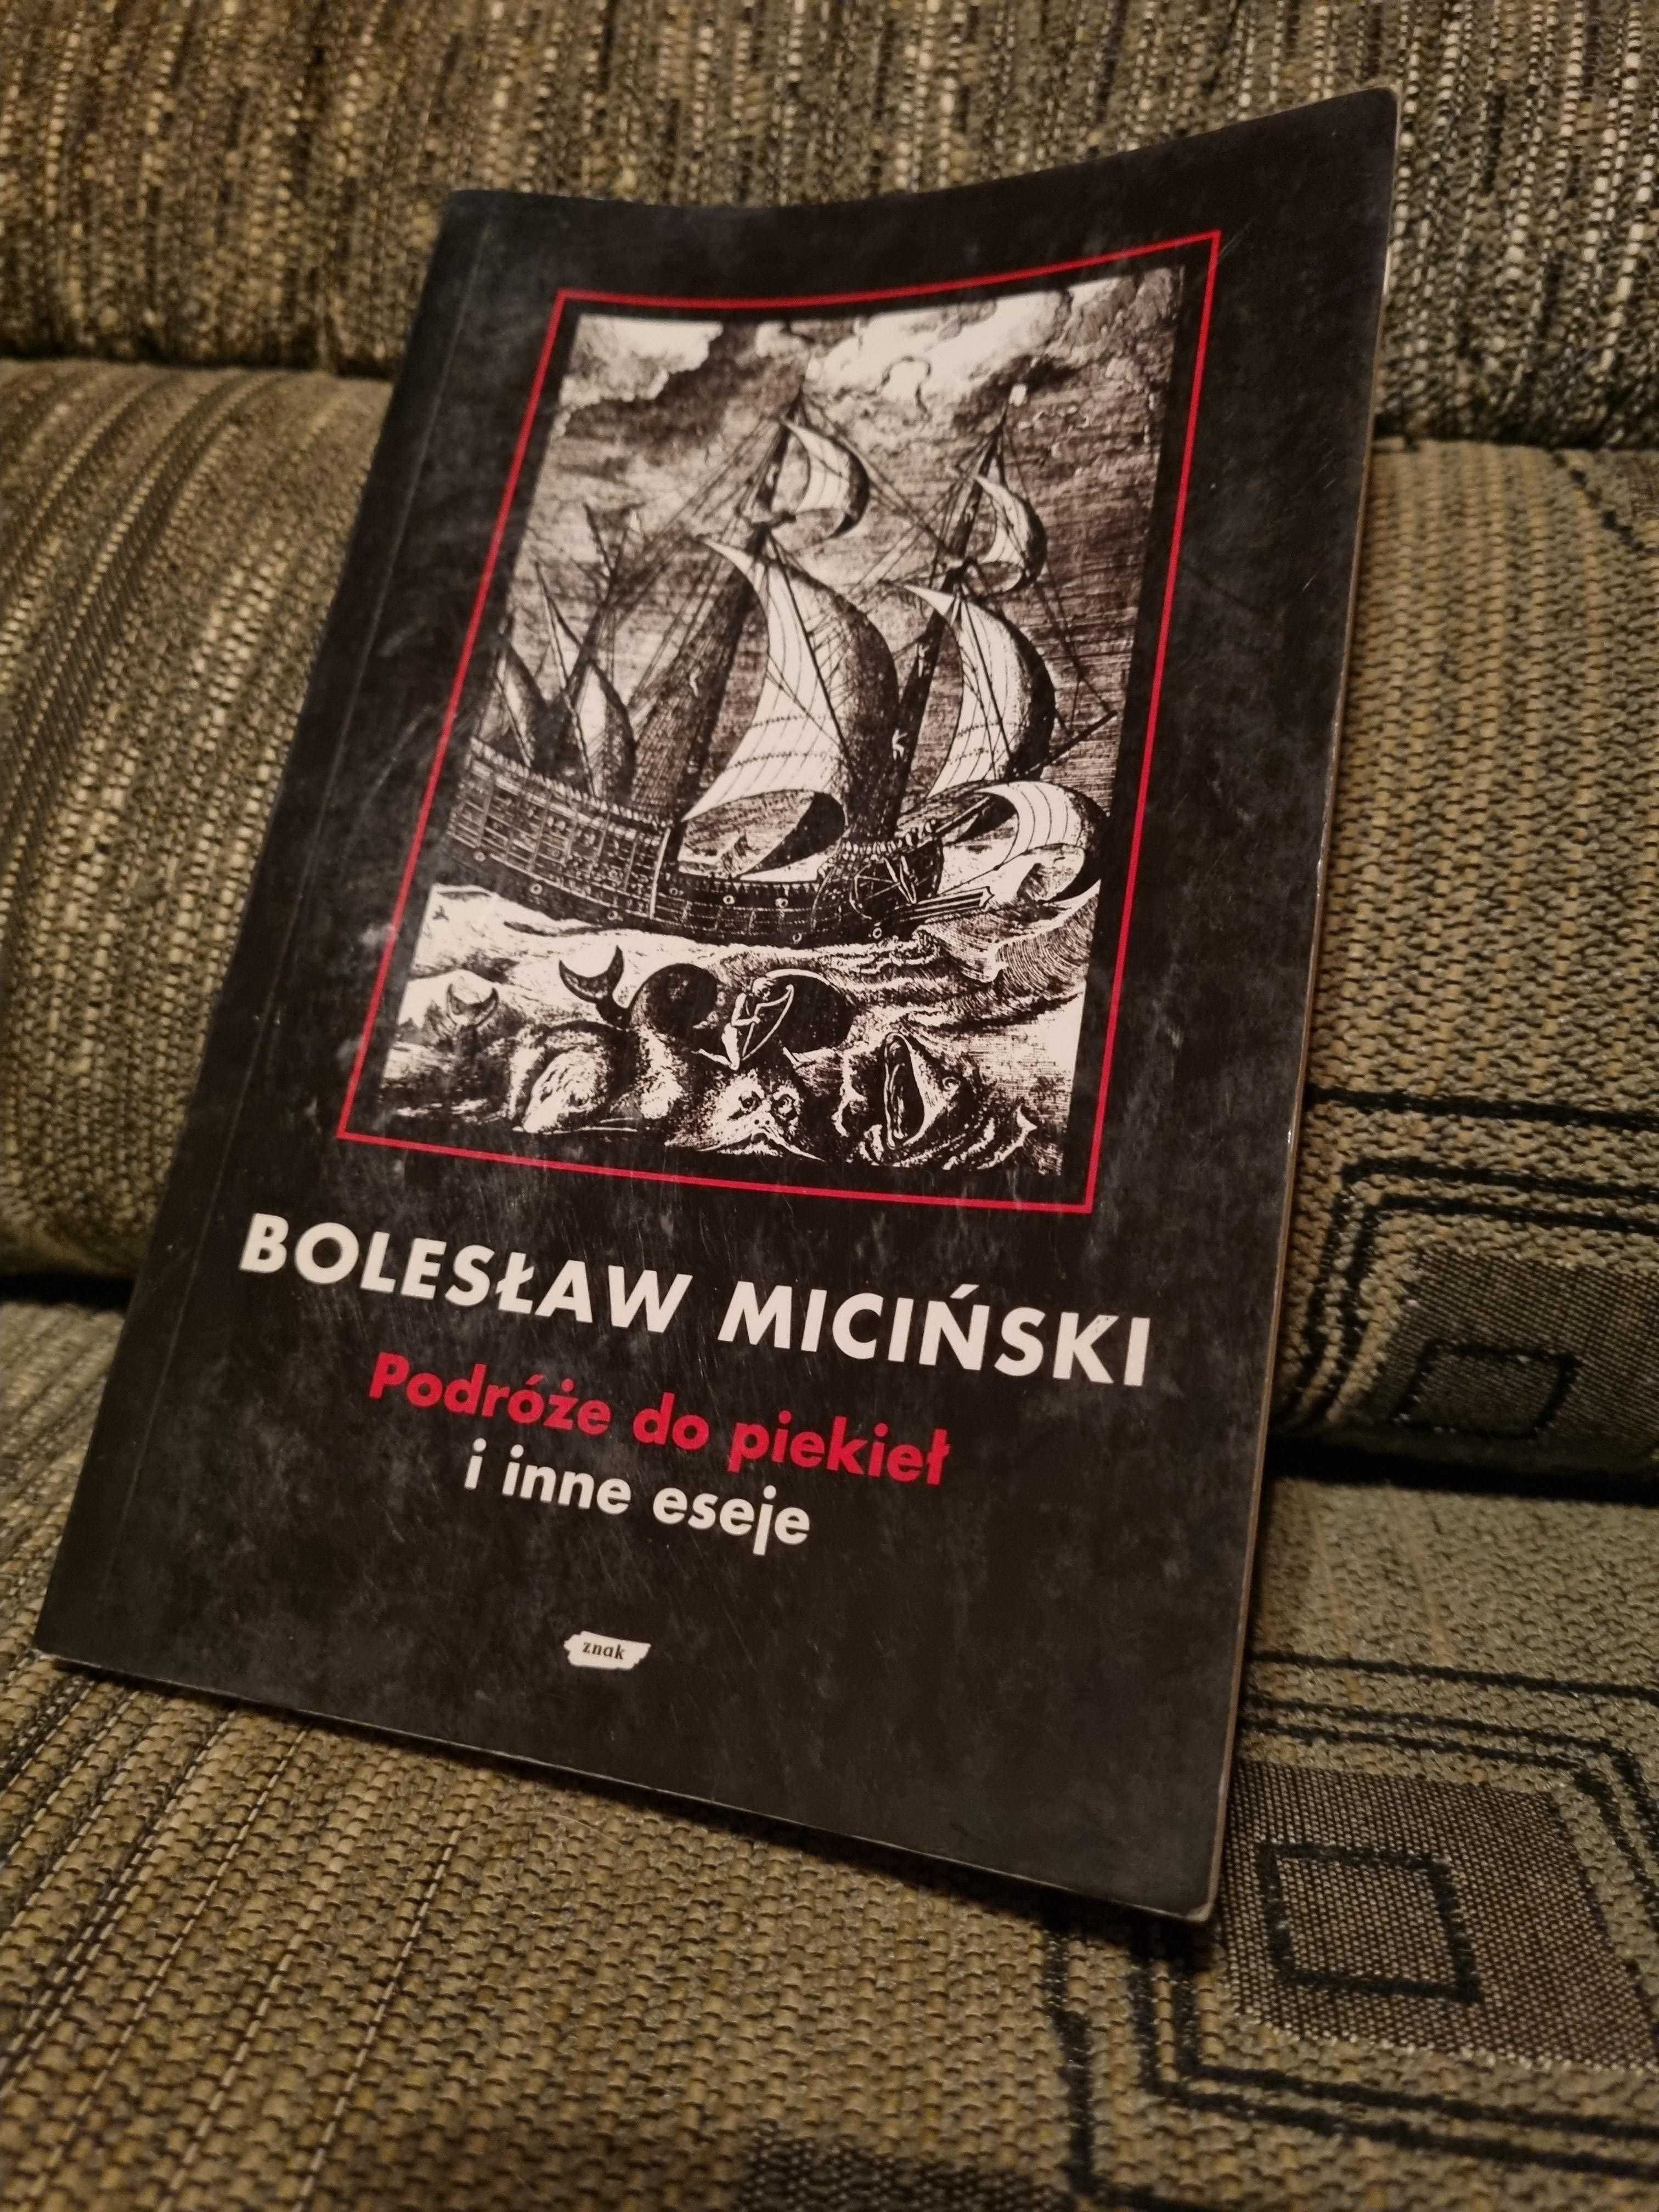 Podróże do piekieł i inne eseje, Bolesław Miciński, 1994